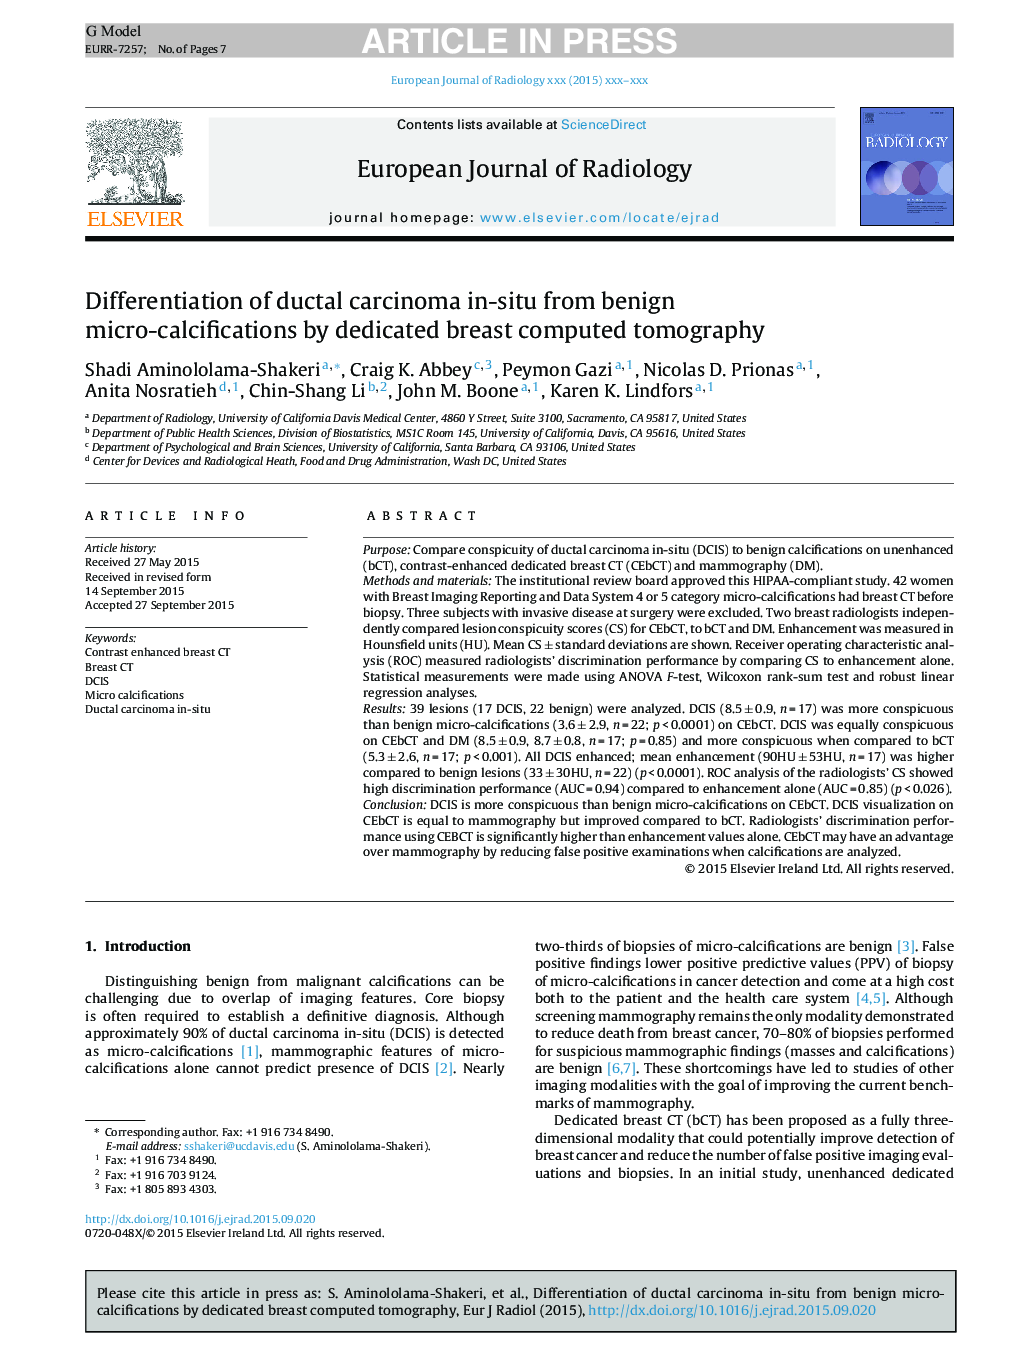 تمایز کارسینوم مجرای کانونی در ناحیه خوشخیم میکرو کلسیفیکس با توموگرافی اختصاصی سونوگرافی اختصاصی 